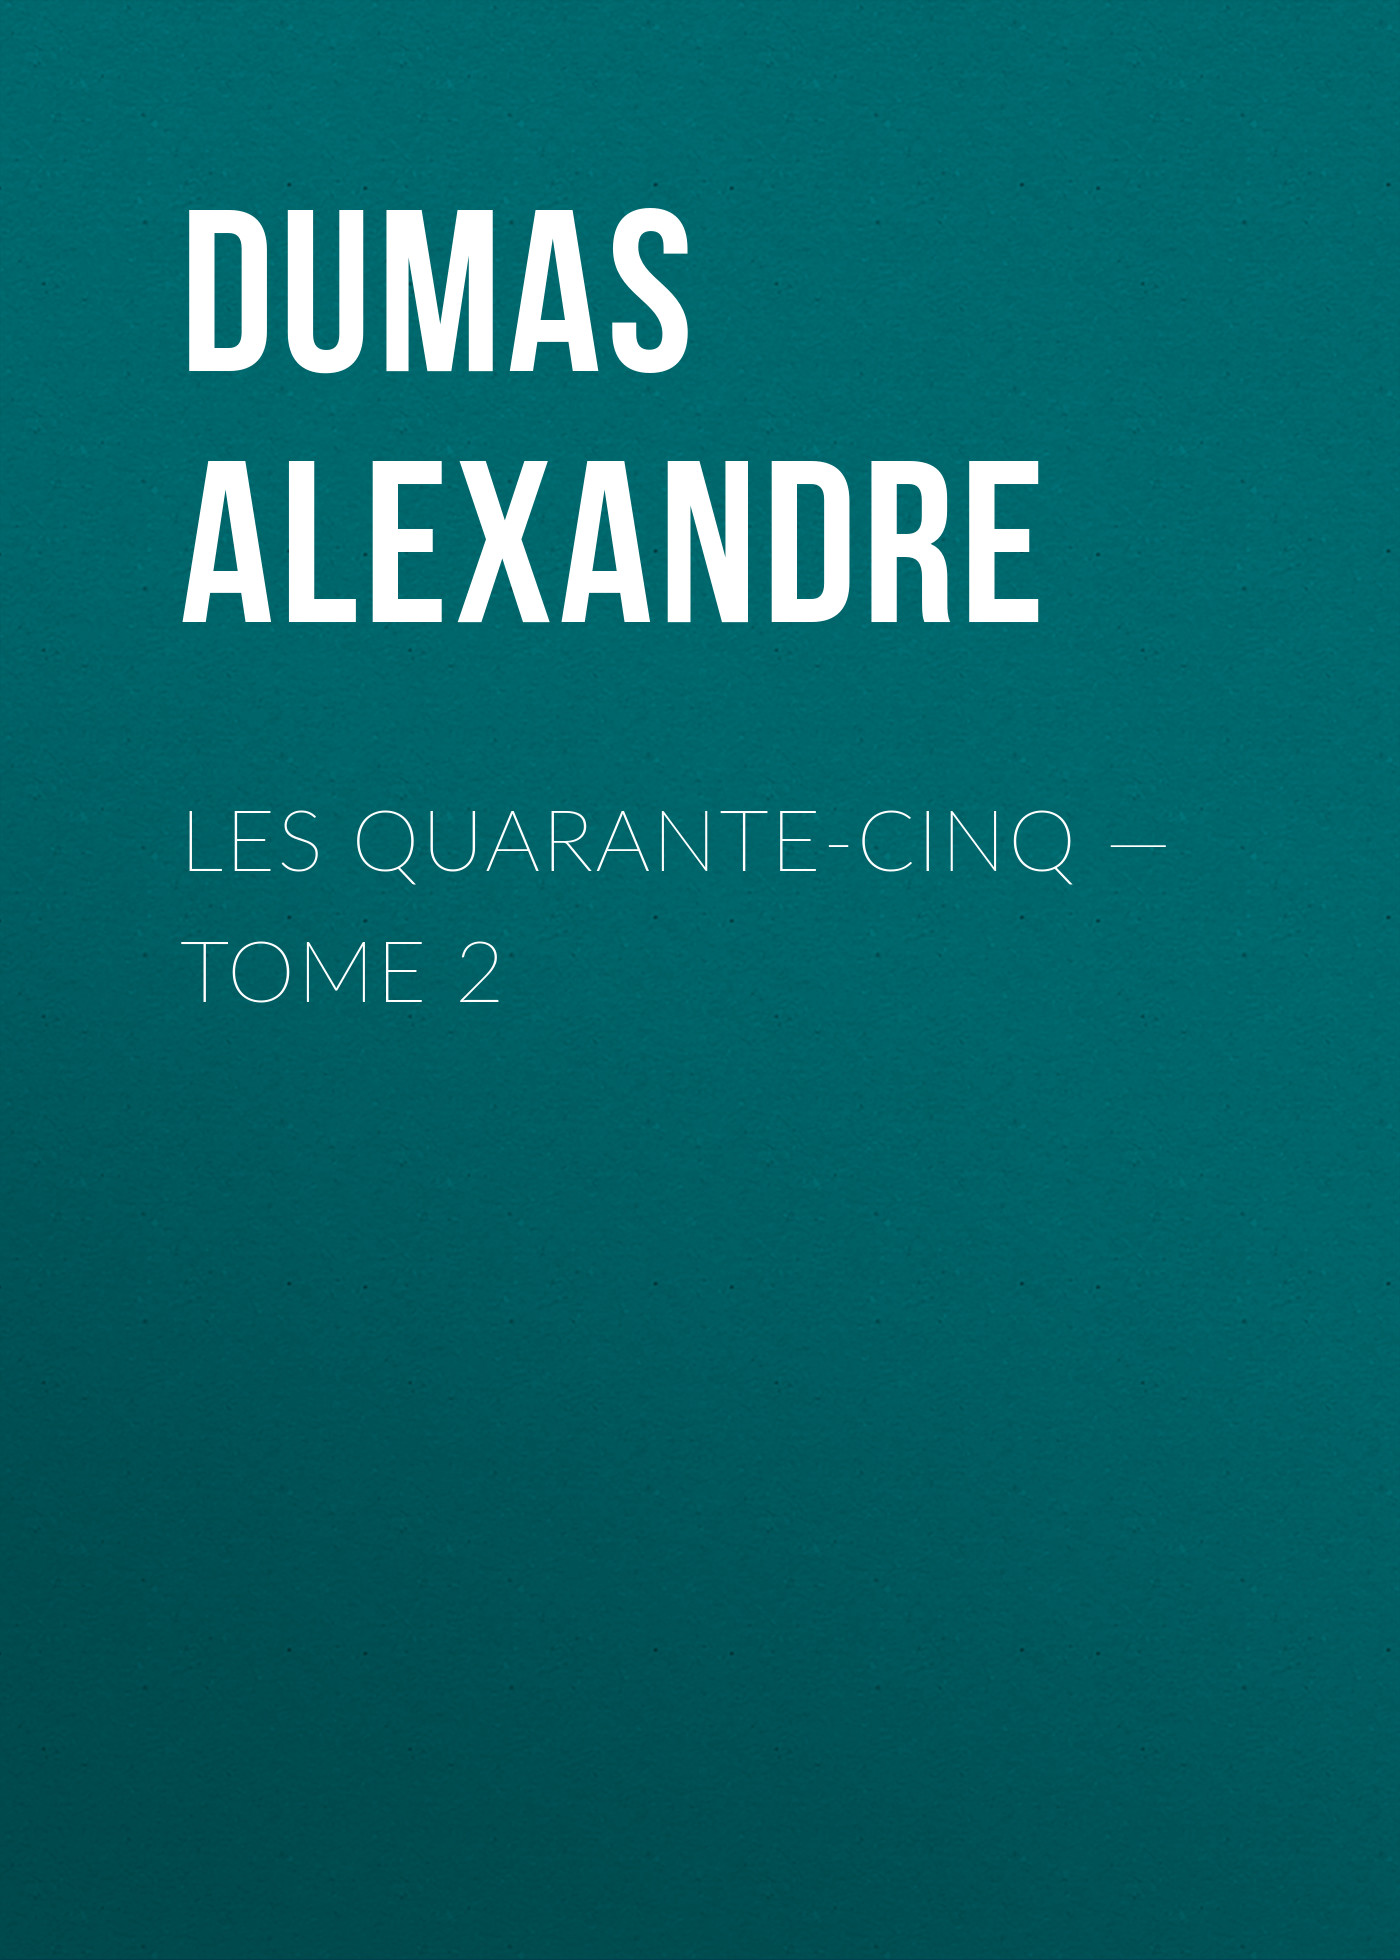 Книга Les Quarante-Cinq – Tome 2 из серии , созданная Alexandre Dumas, может относится к жанру Литература 19 века, Зарубежная старинная литература, Зарубежная классика. Стоимость электронной книги Les Quarante-Cinq – Tome 2 с идентификатором 25203567 составляет 0 руб.